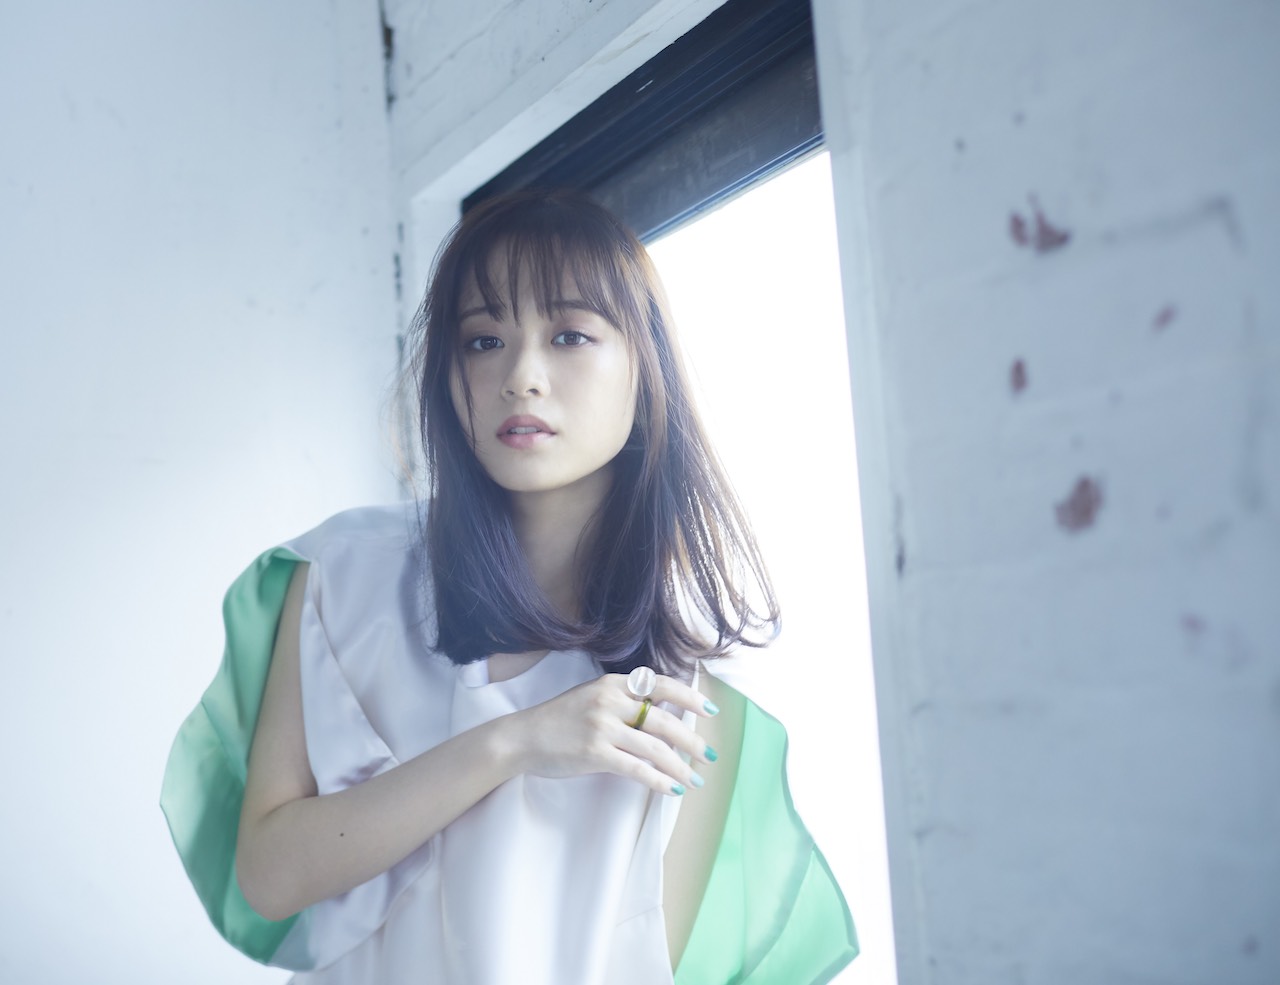 大原櫻子、一青窈を作詞に、丸谷マナブをプロデューサーに迎えた シングルのリリースを発表！